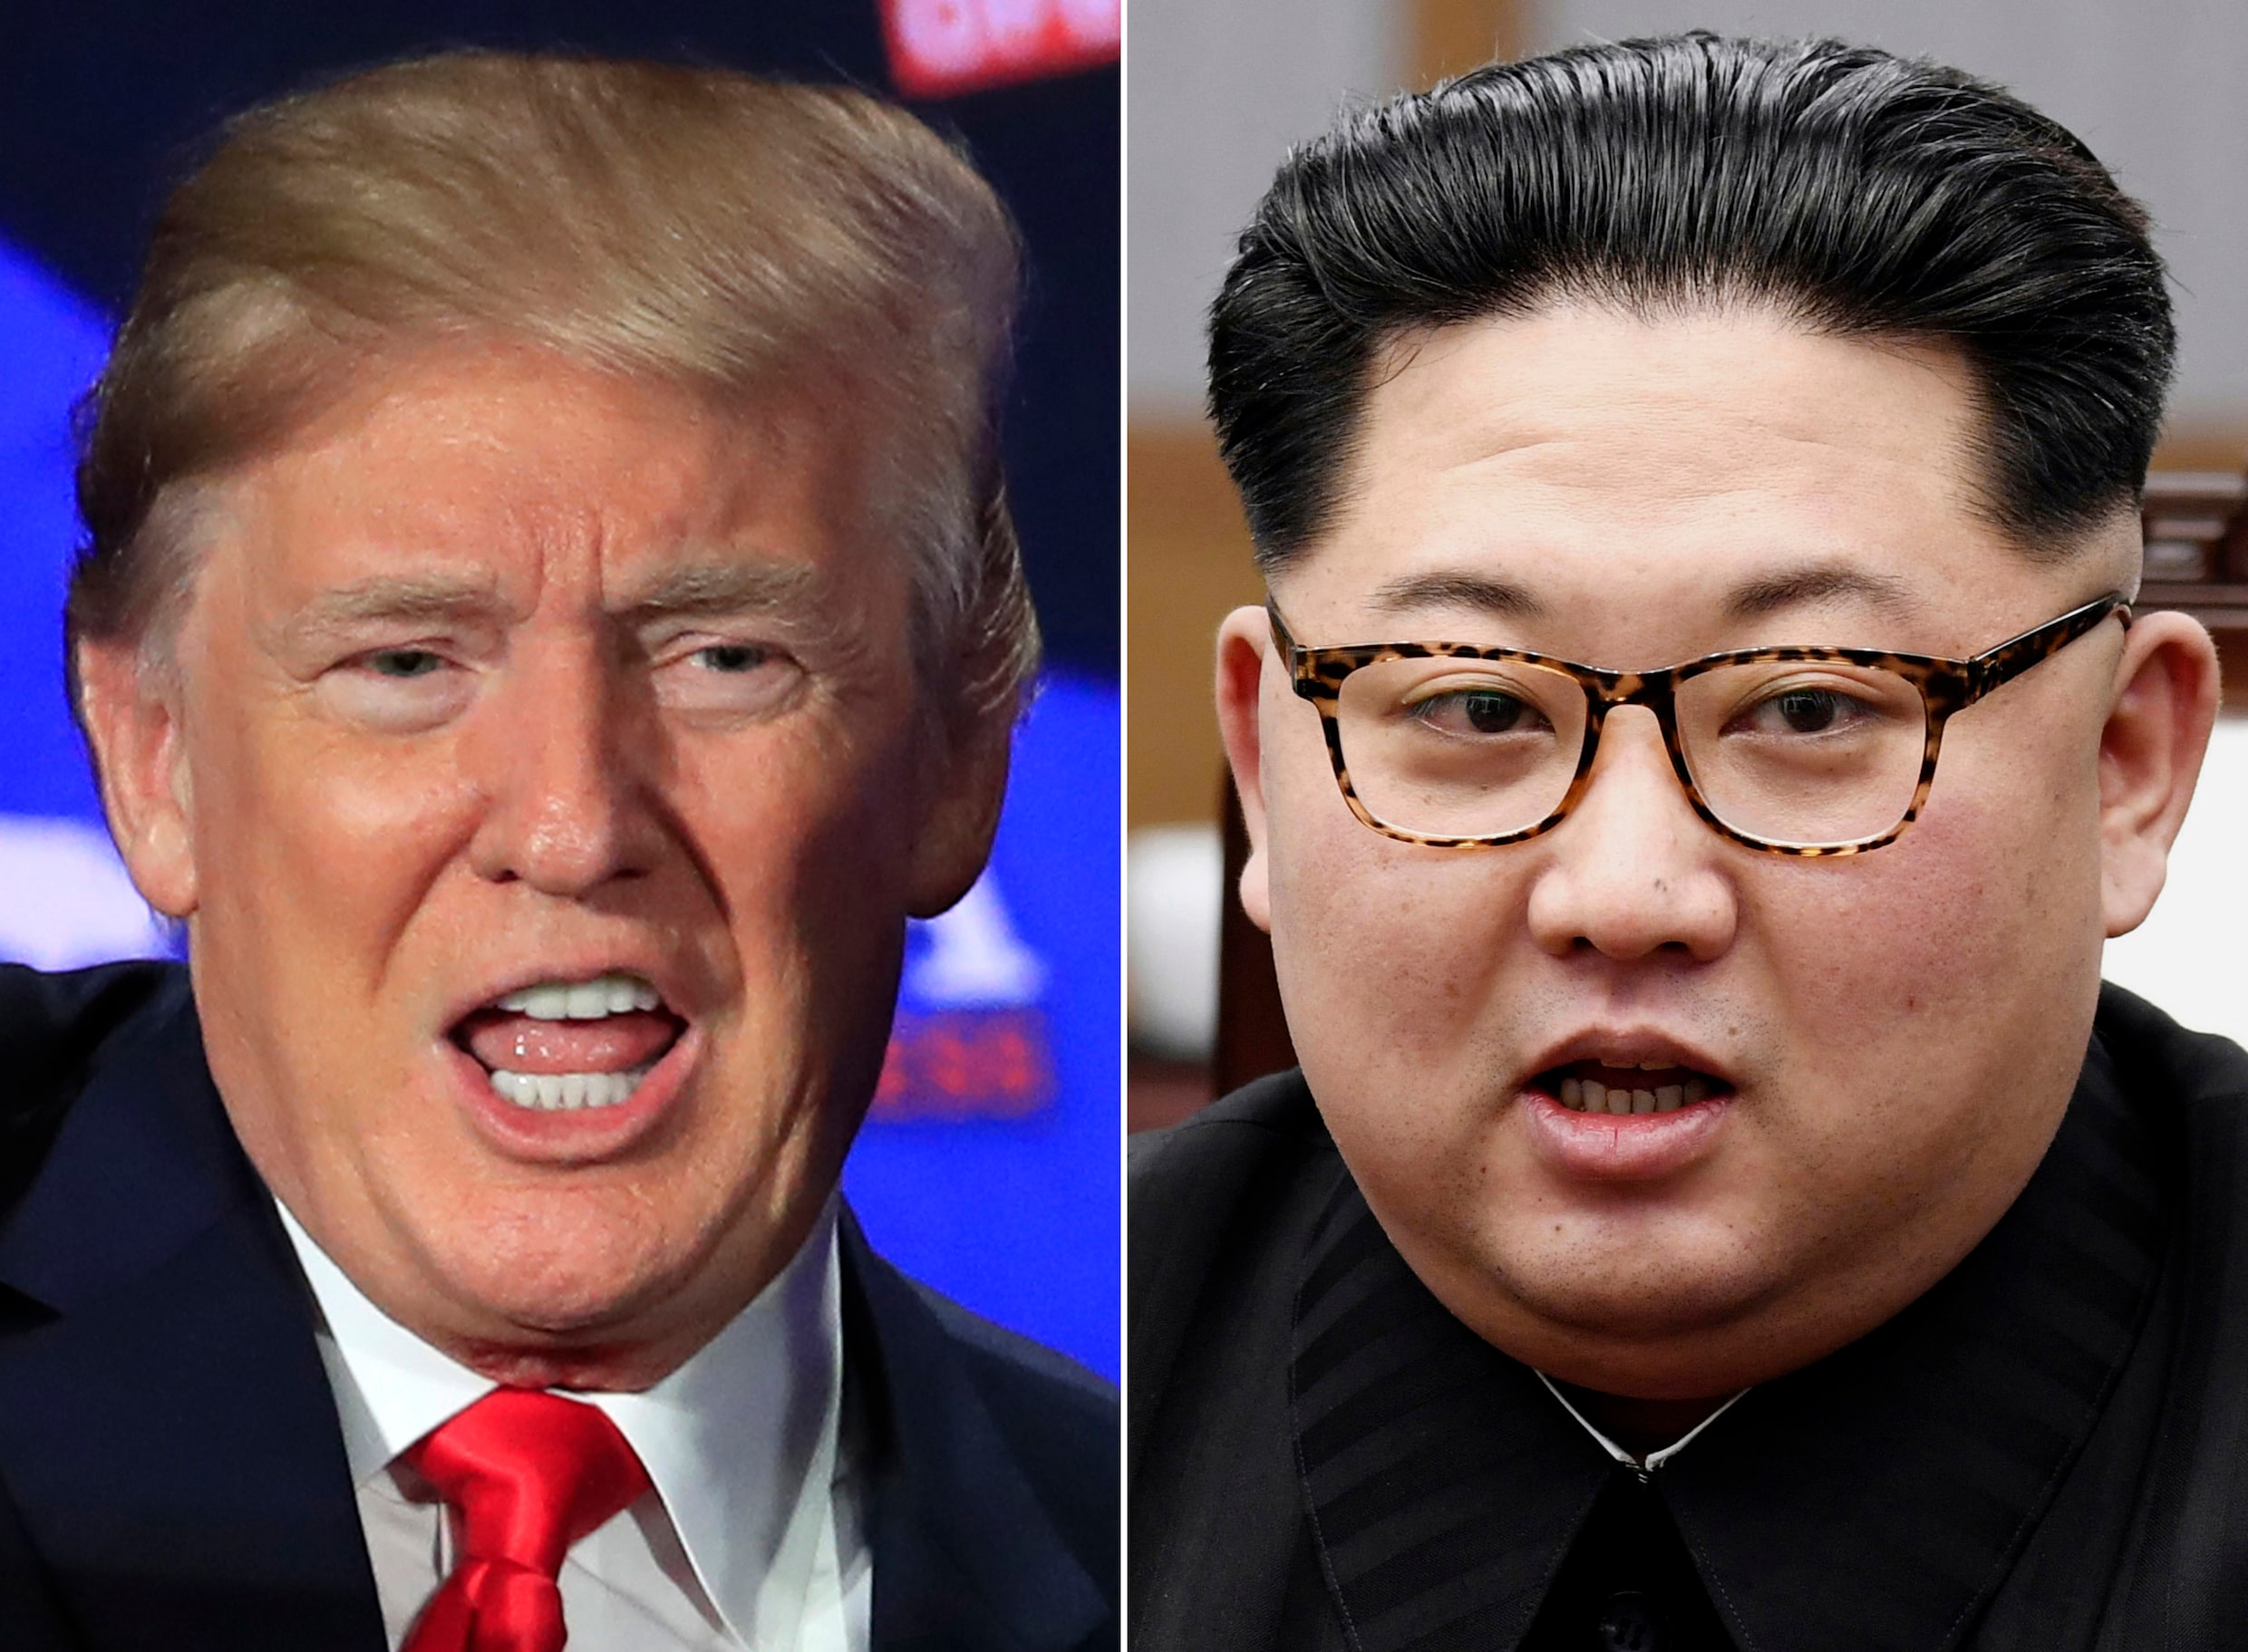 Noord-Korea dreigt top tussen Trump en Kim Jong-un te annuleren. Trump: "We zullen zien"